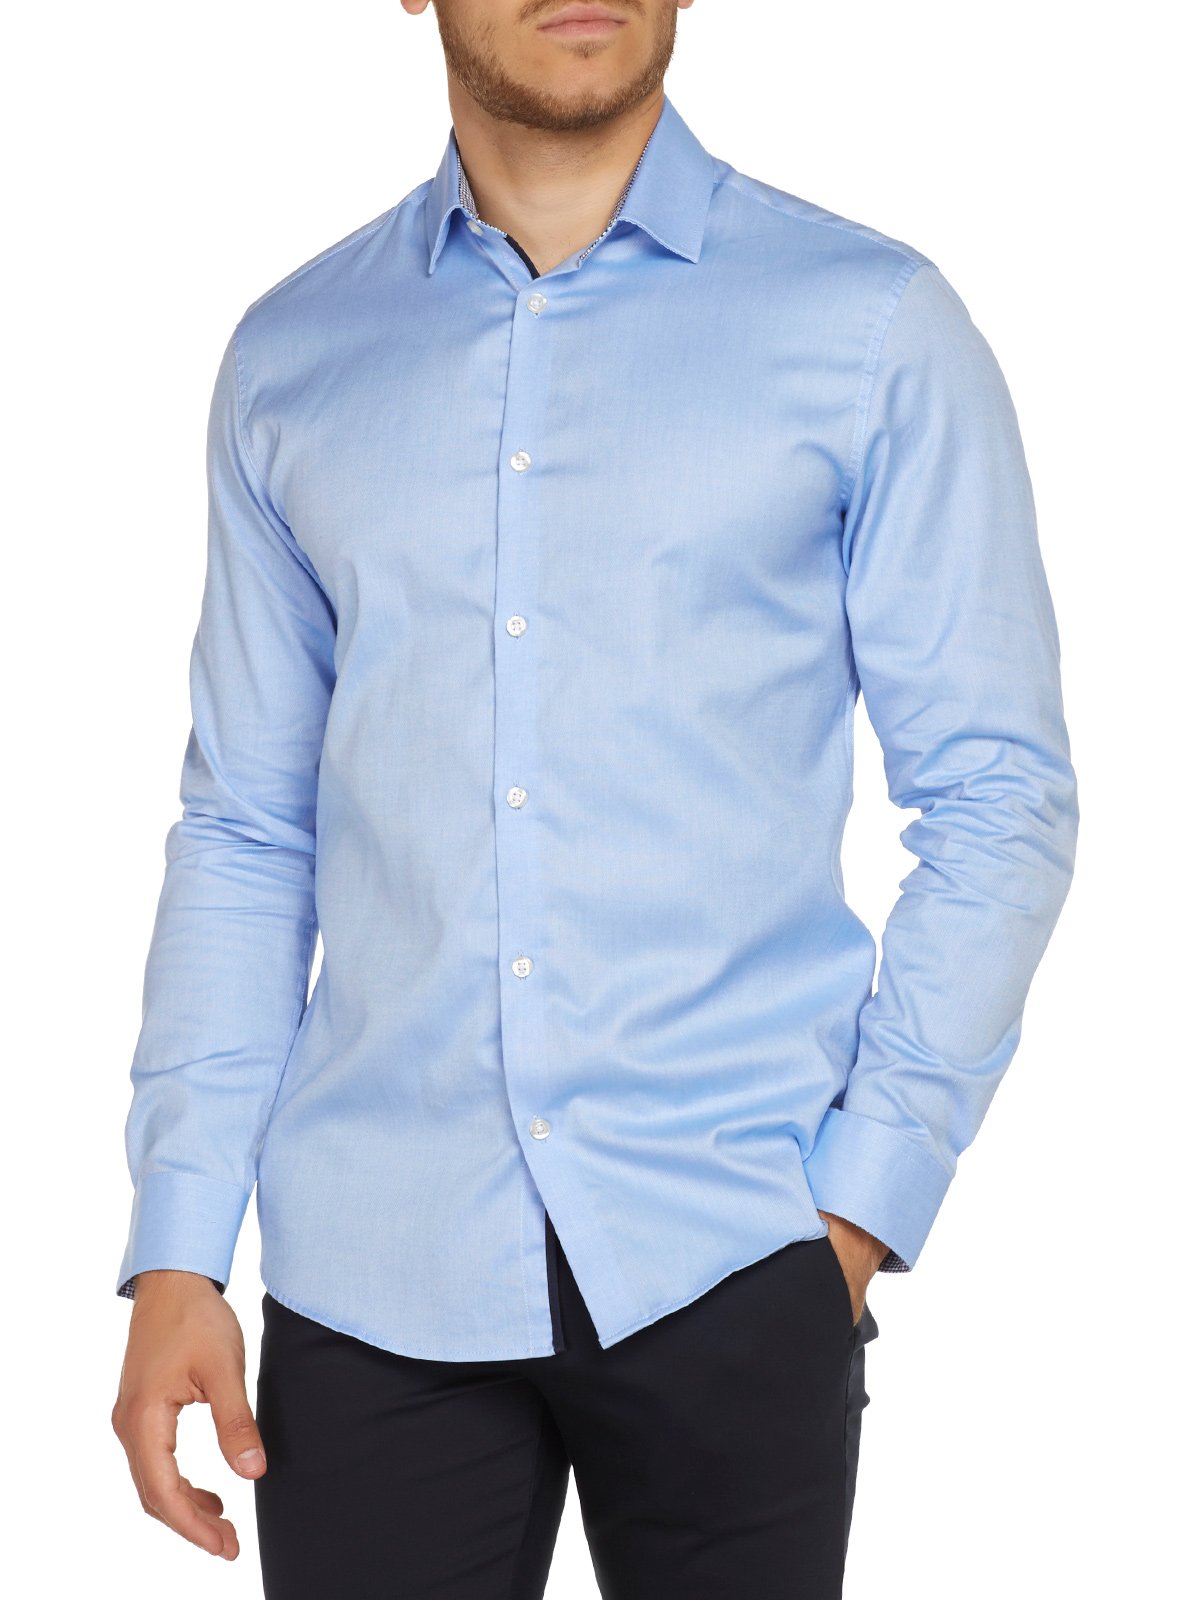 SELECTED HOMME Herren Shdonenew-mark skjorte Ls Noos Businesshemd, Light Blue, XXL EU